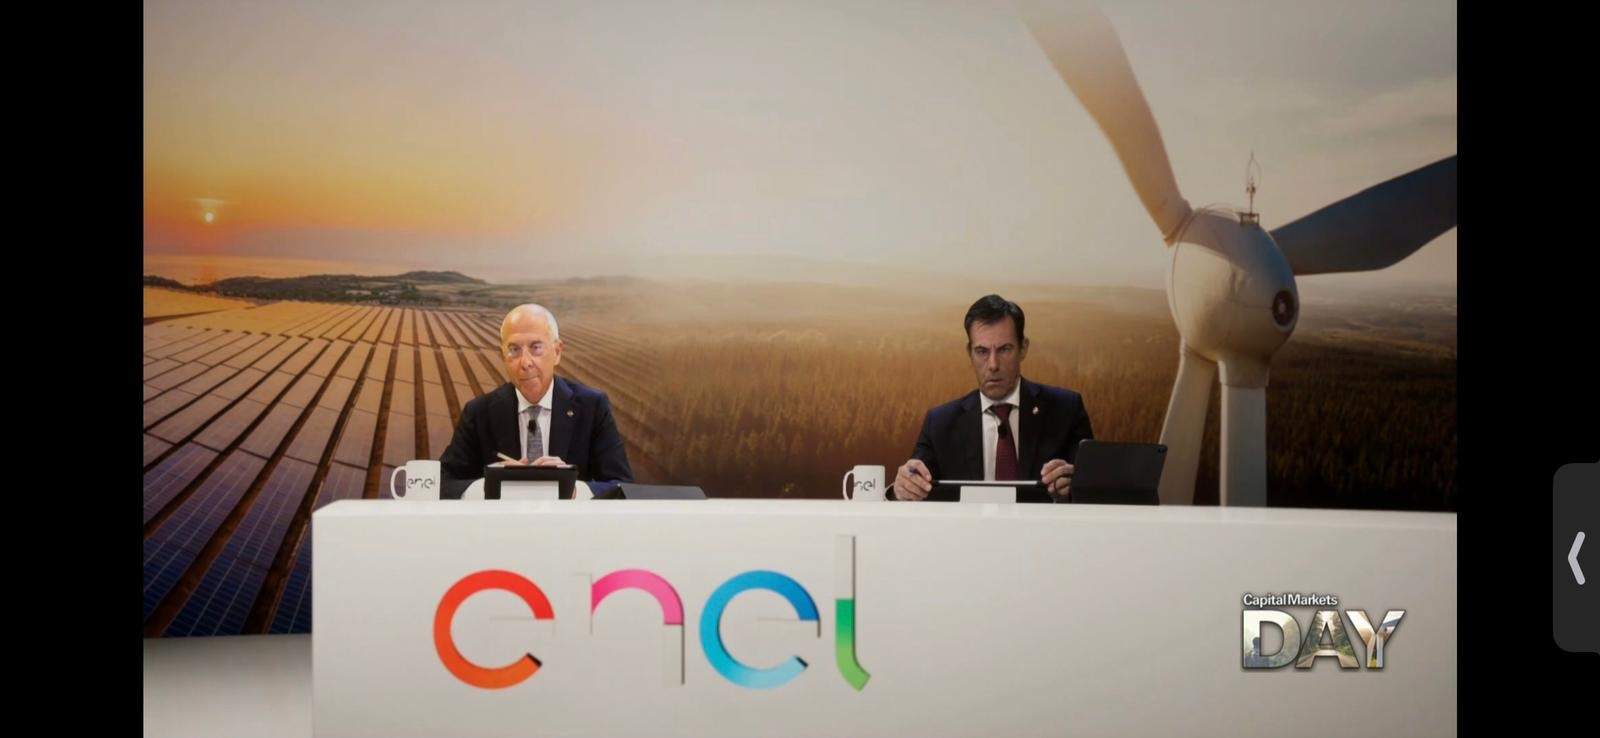 Enel es la empresa que más ha reducido las emisiones de carbono en la última década, según Corporate Knights